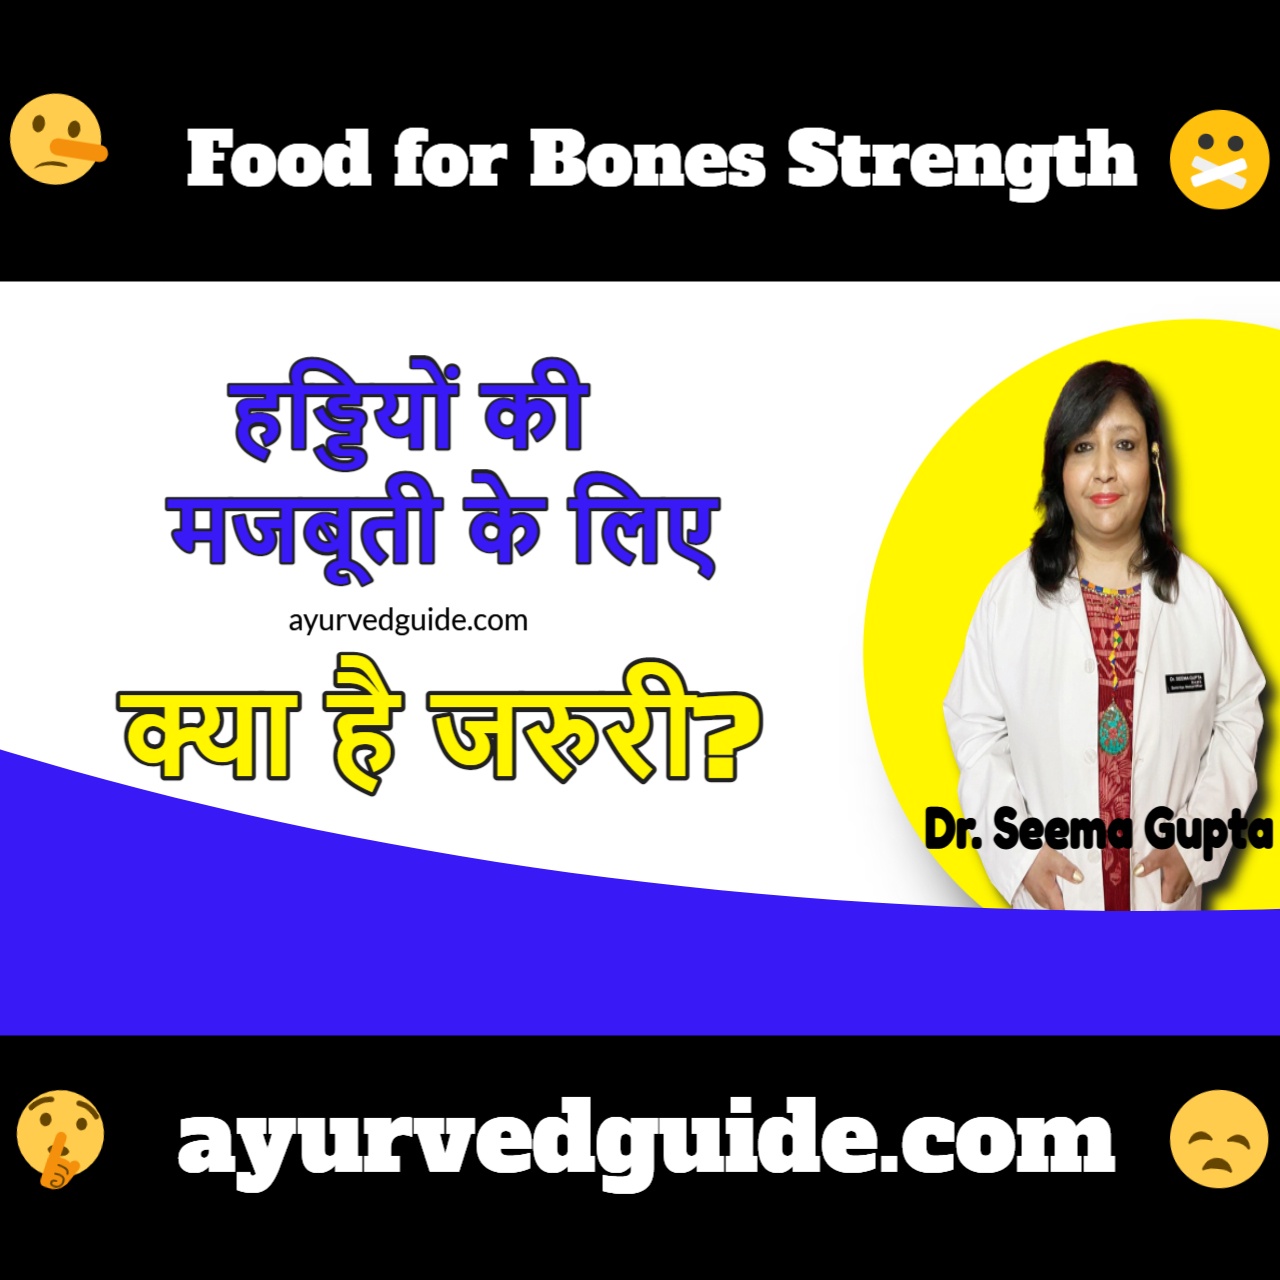 हड्डियों की मजबूती के लिए क्या है जरुरी - Food for Bones Strength